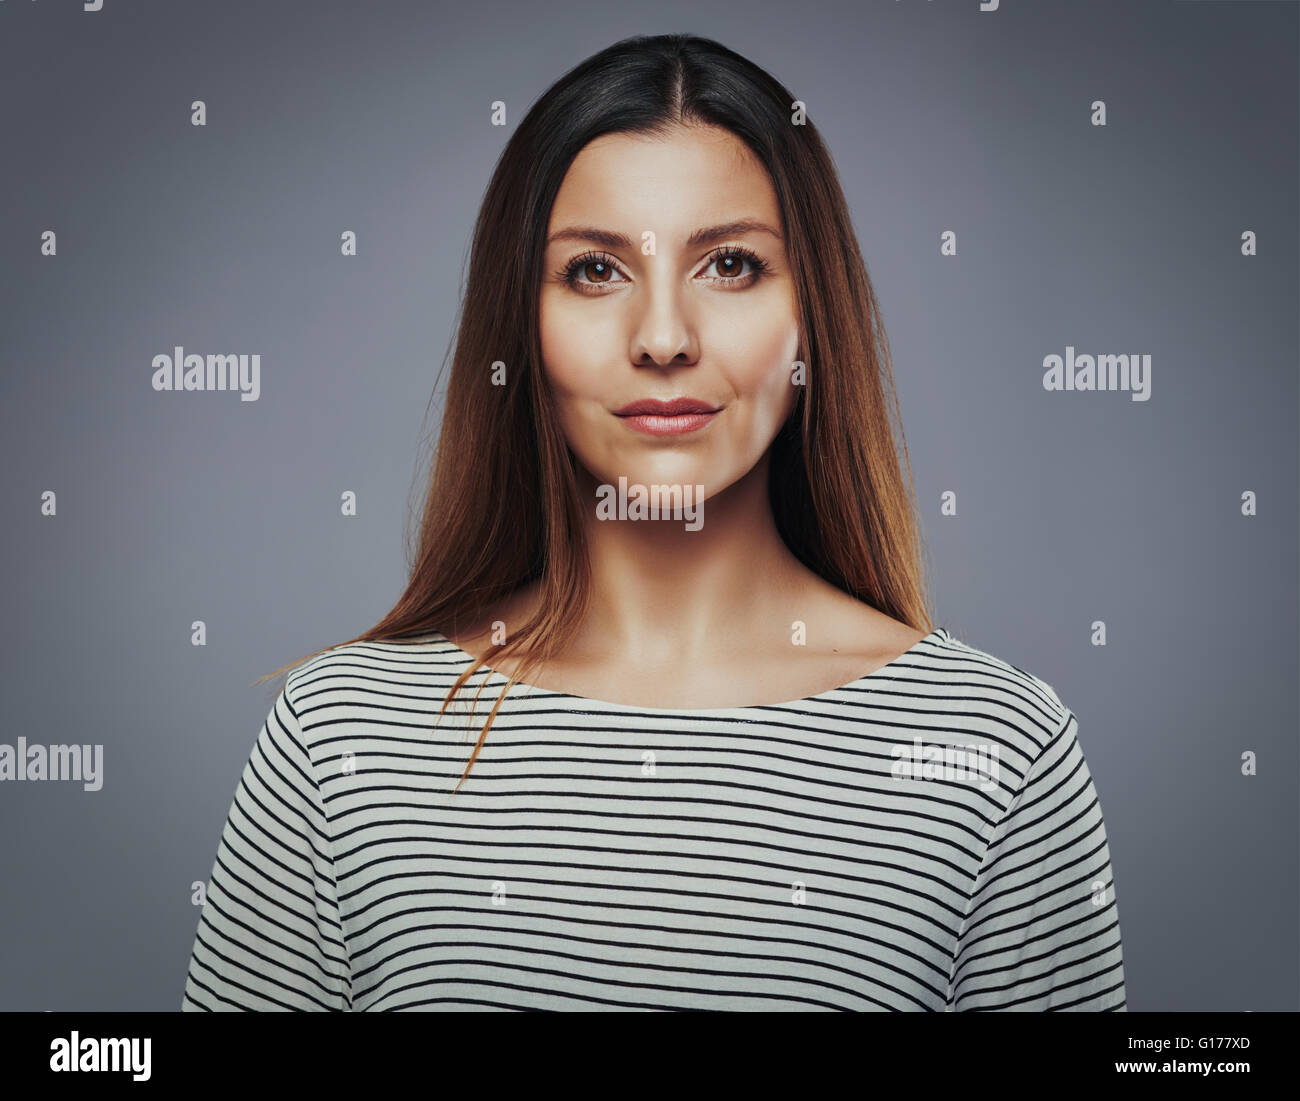 Belle jeune femme avec teint parfait sur un arrière-plan gris Photo Stock -  Alamy